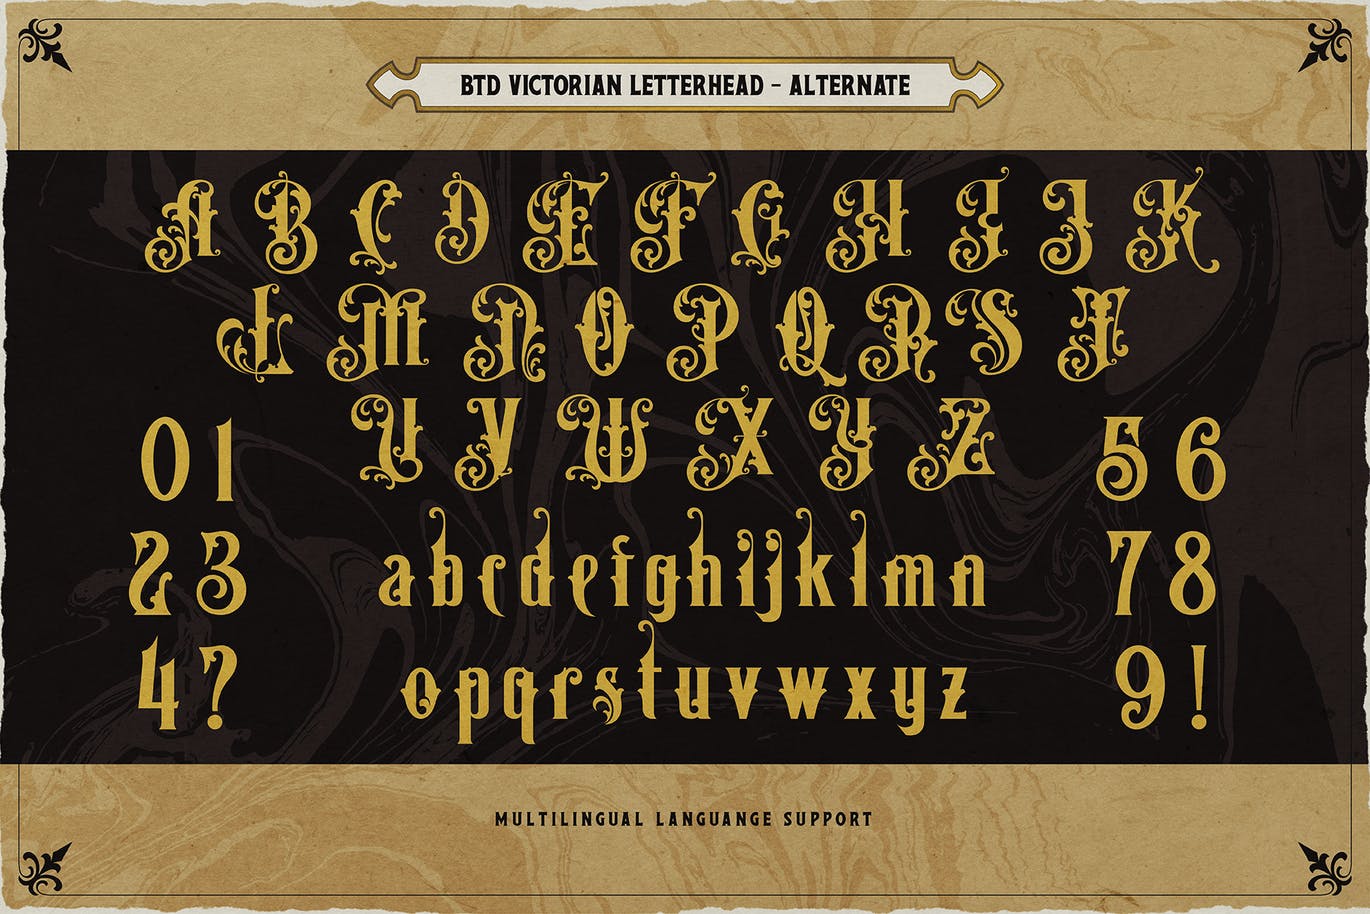 复古维多利亚版式设计衬线字体素材 Victorian Letterhead 设计素材 第12张